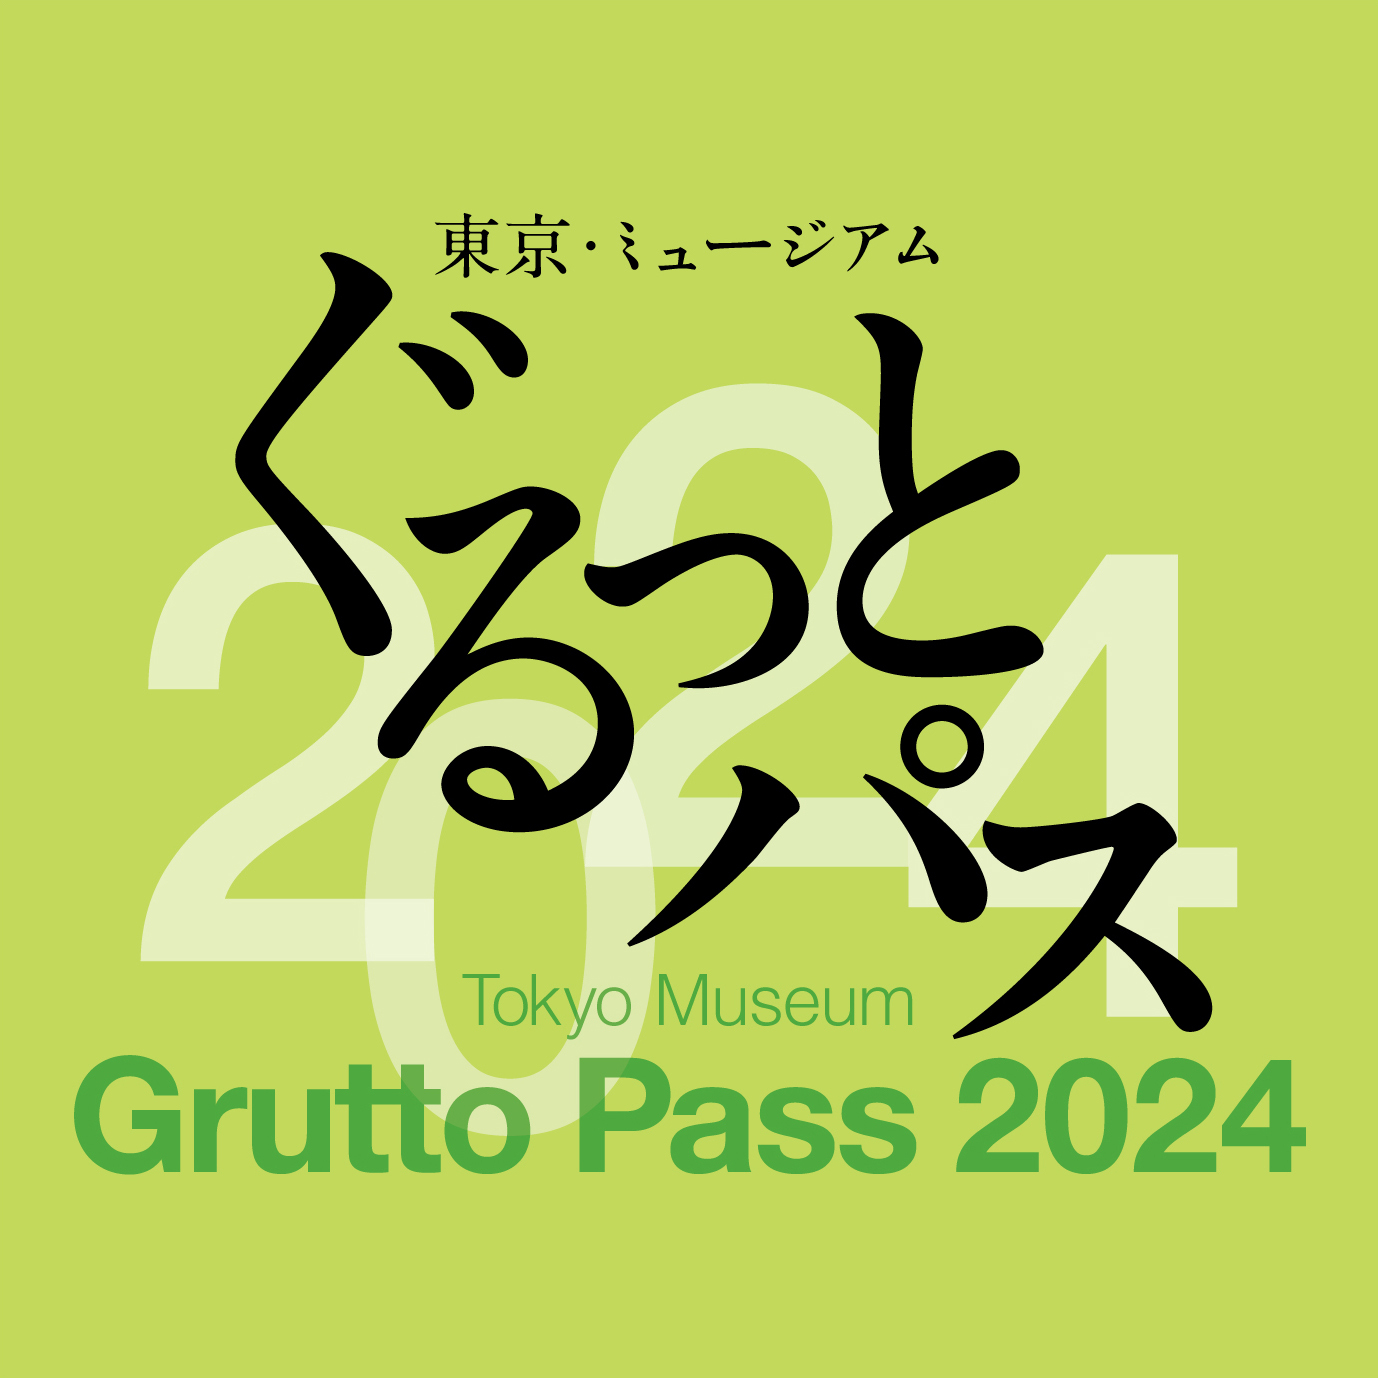 東京ミュージアム「ぐるっとパス2024」